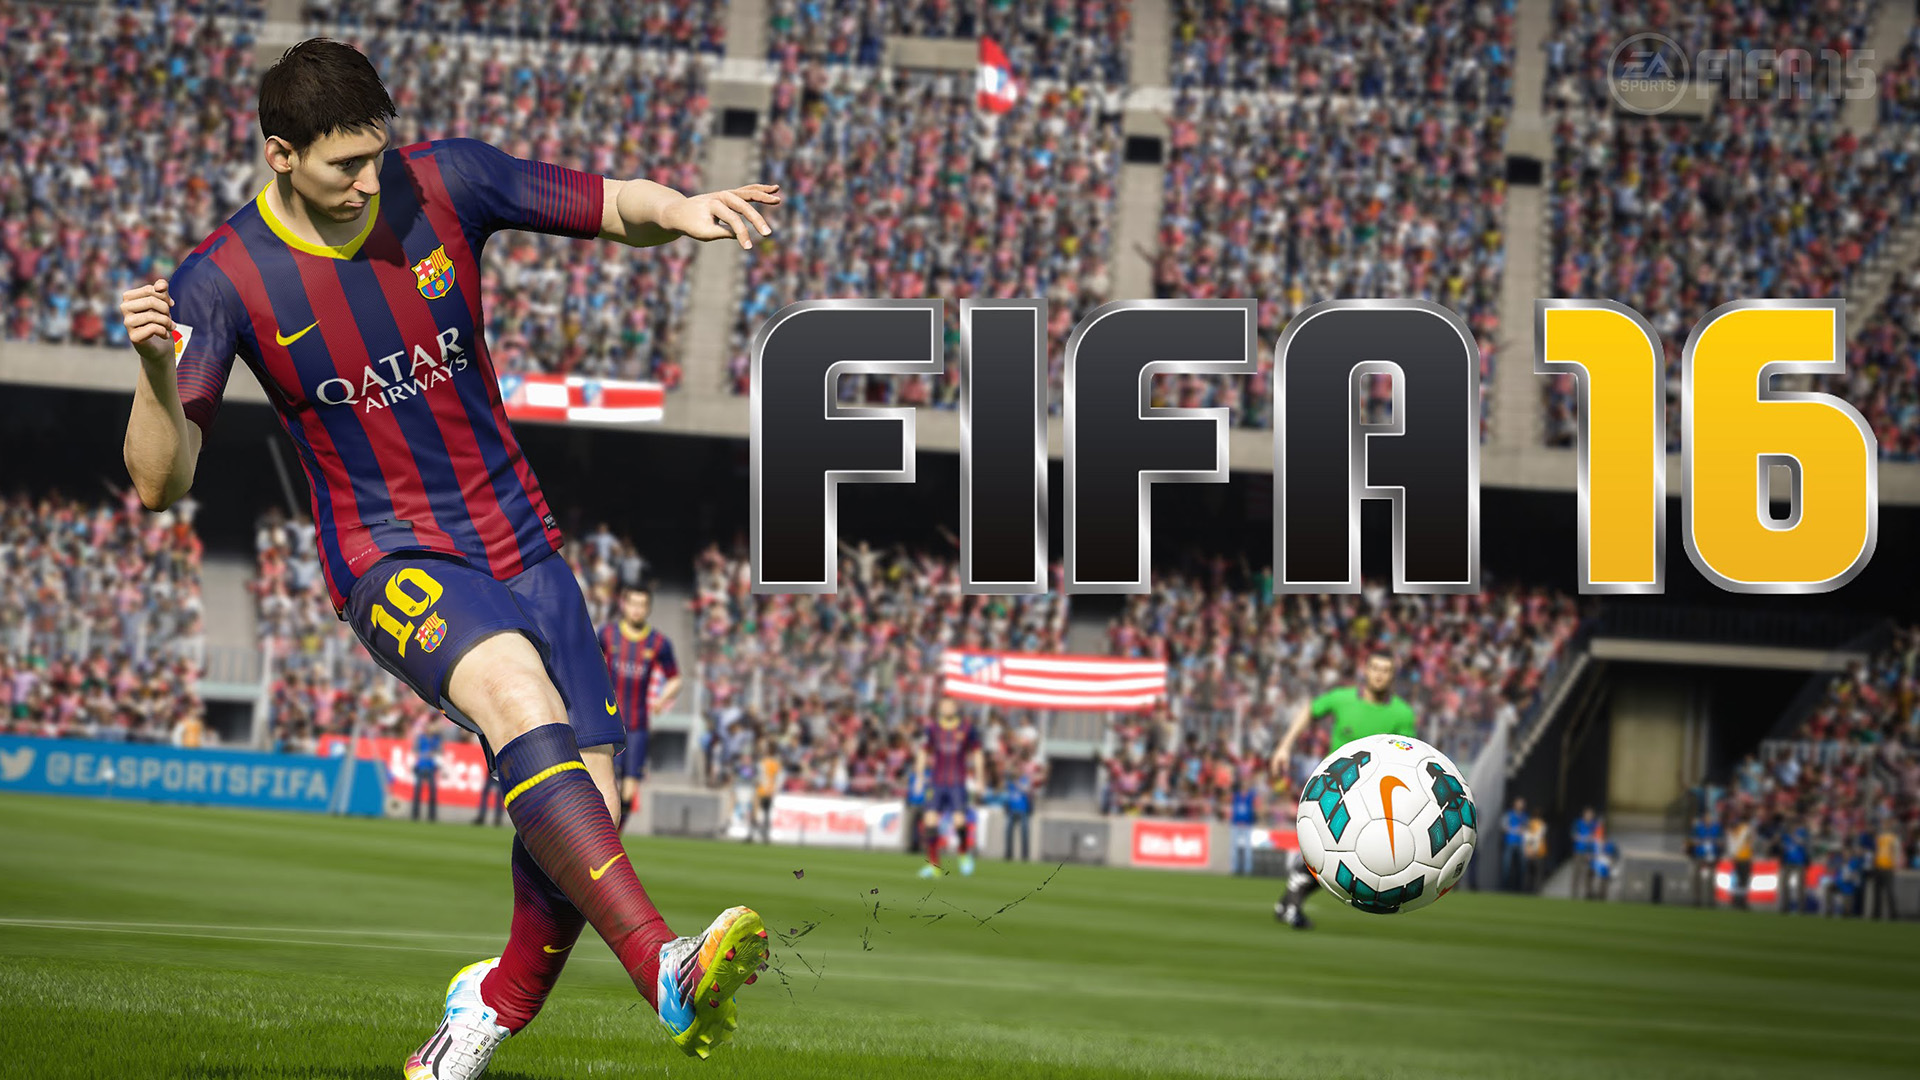 عشر فوارق بين FIFA 16 وFIFA 15